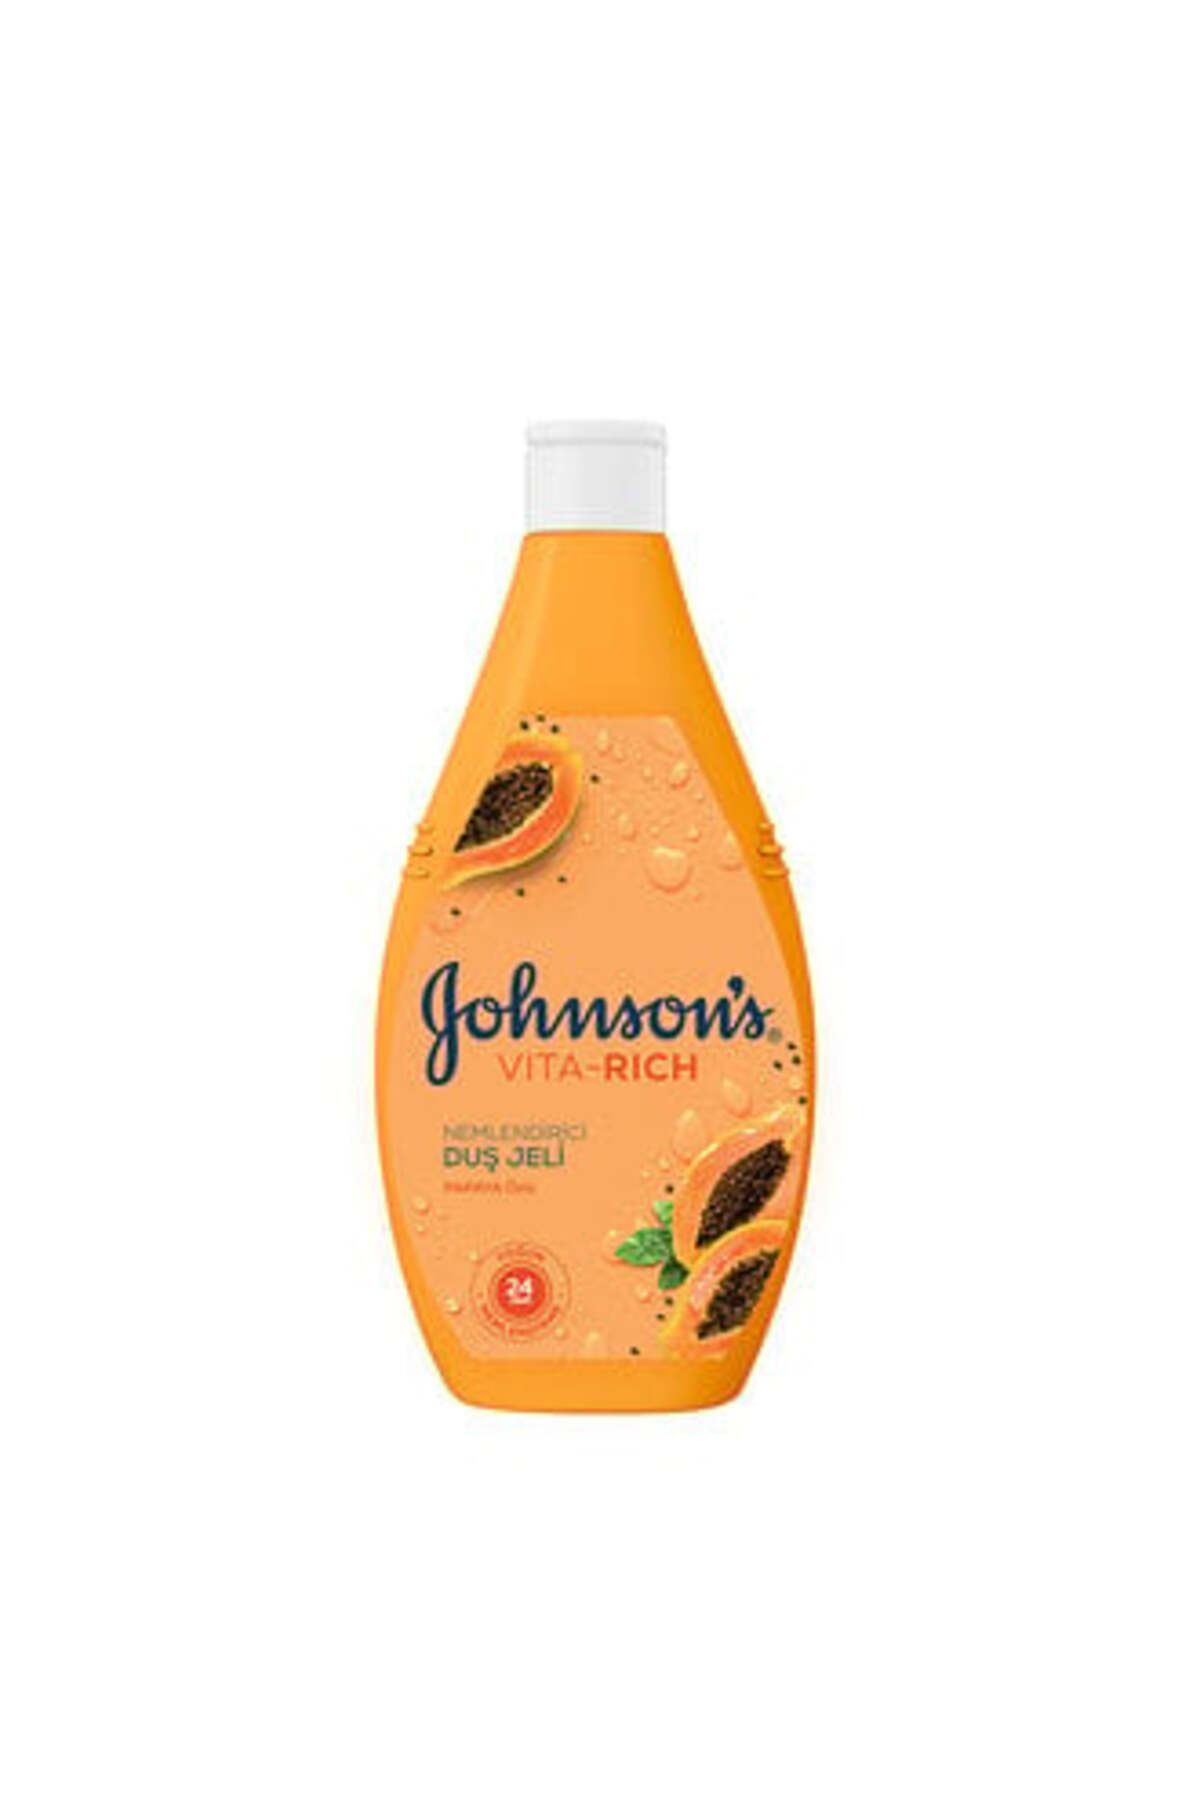 Johnson's Vıta-rich Papaya Özlü Nemlendirici Duş Jeli 400Ml ( 2 ADET )